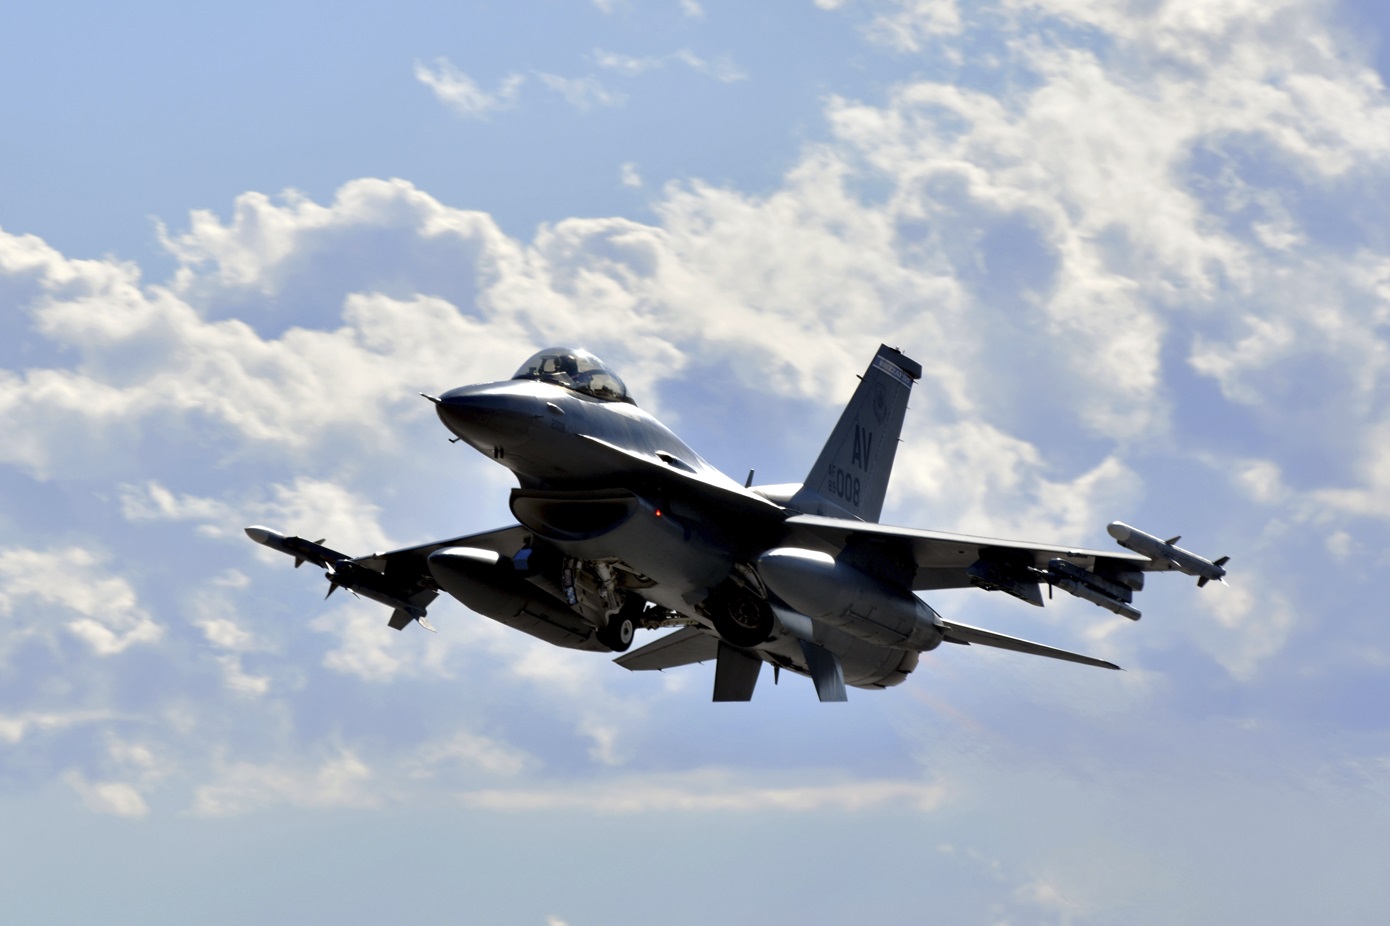 Πολεμικά πλοία και μαχητικά αεροσκάφη των ΗΠΑ κατευθύνονται στη Μέση Ανατολή – Ενισχύονται οι αμερικάνικες δυνάμεις